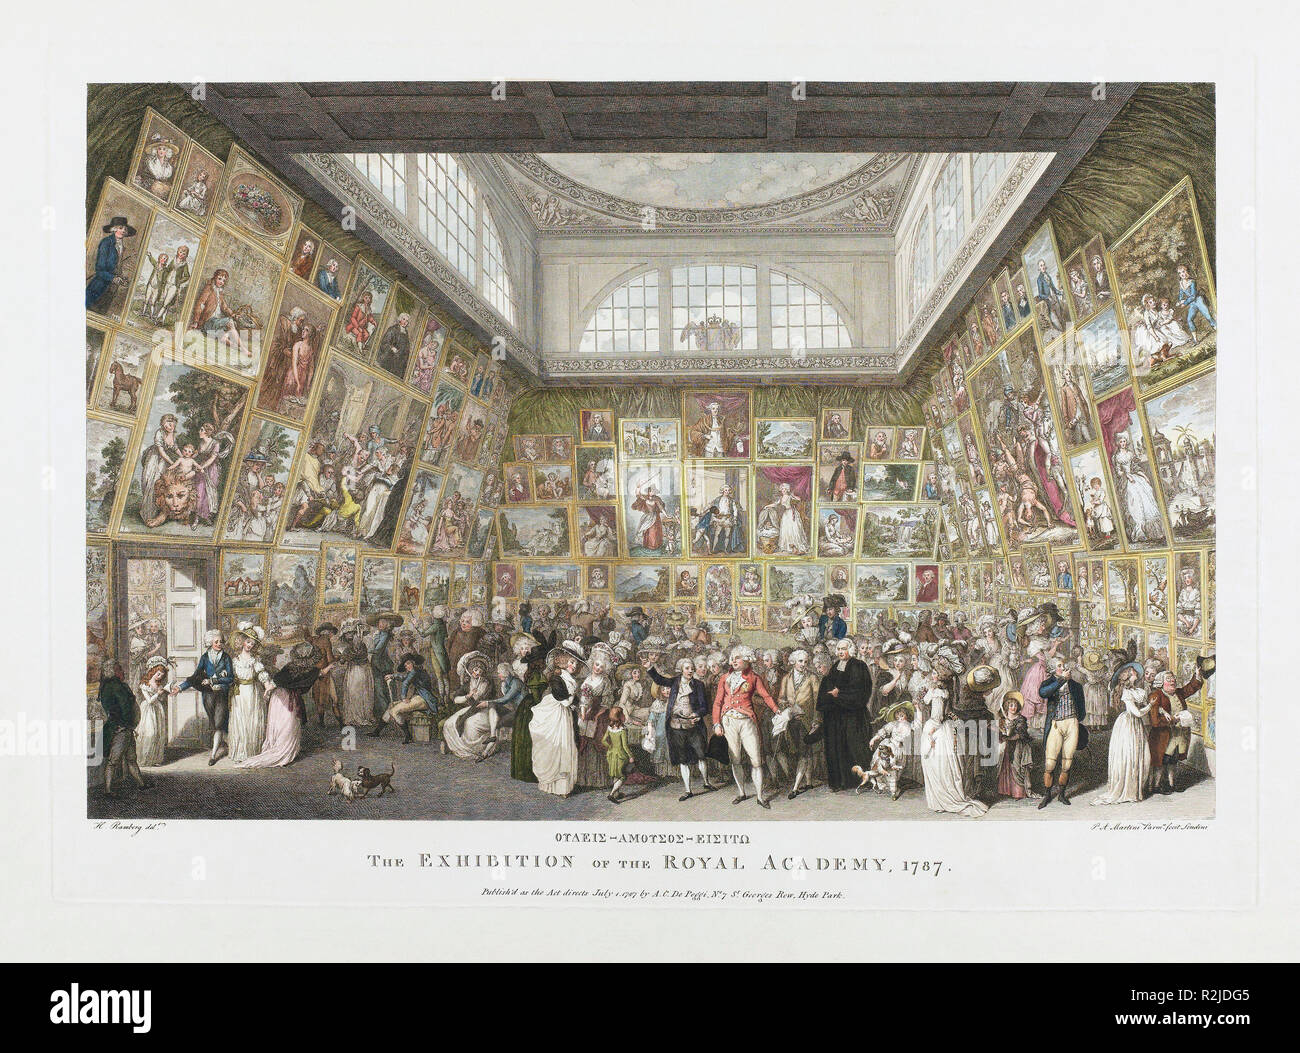 L'exposition de la Royal Academy, 1787. Après une gravure contemporaine. Après une œuvre de l'artiste italien Pietro Antonio Martini, 1738-1797. Banque D'Images